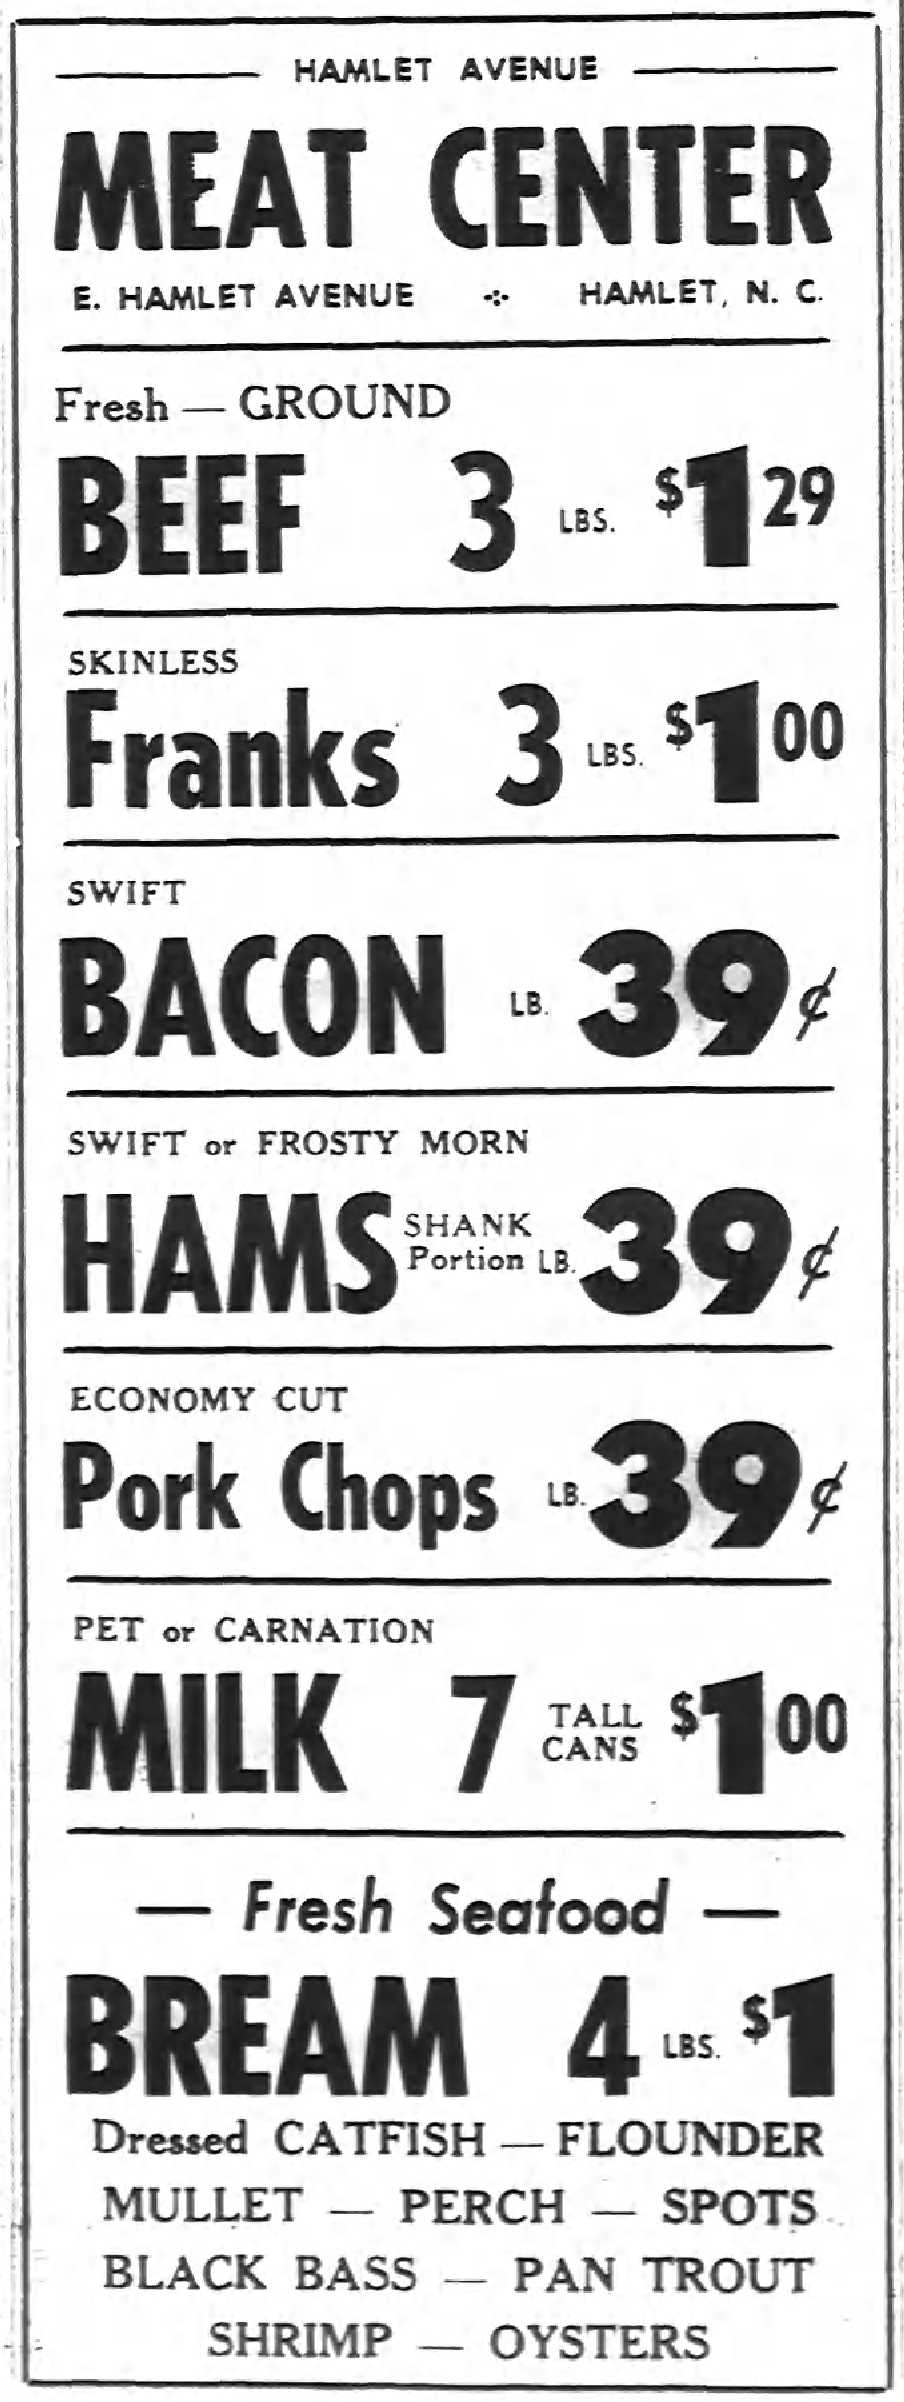 1962 Meat Center.jpg